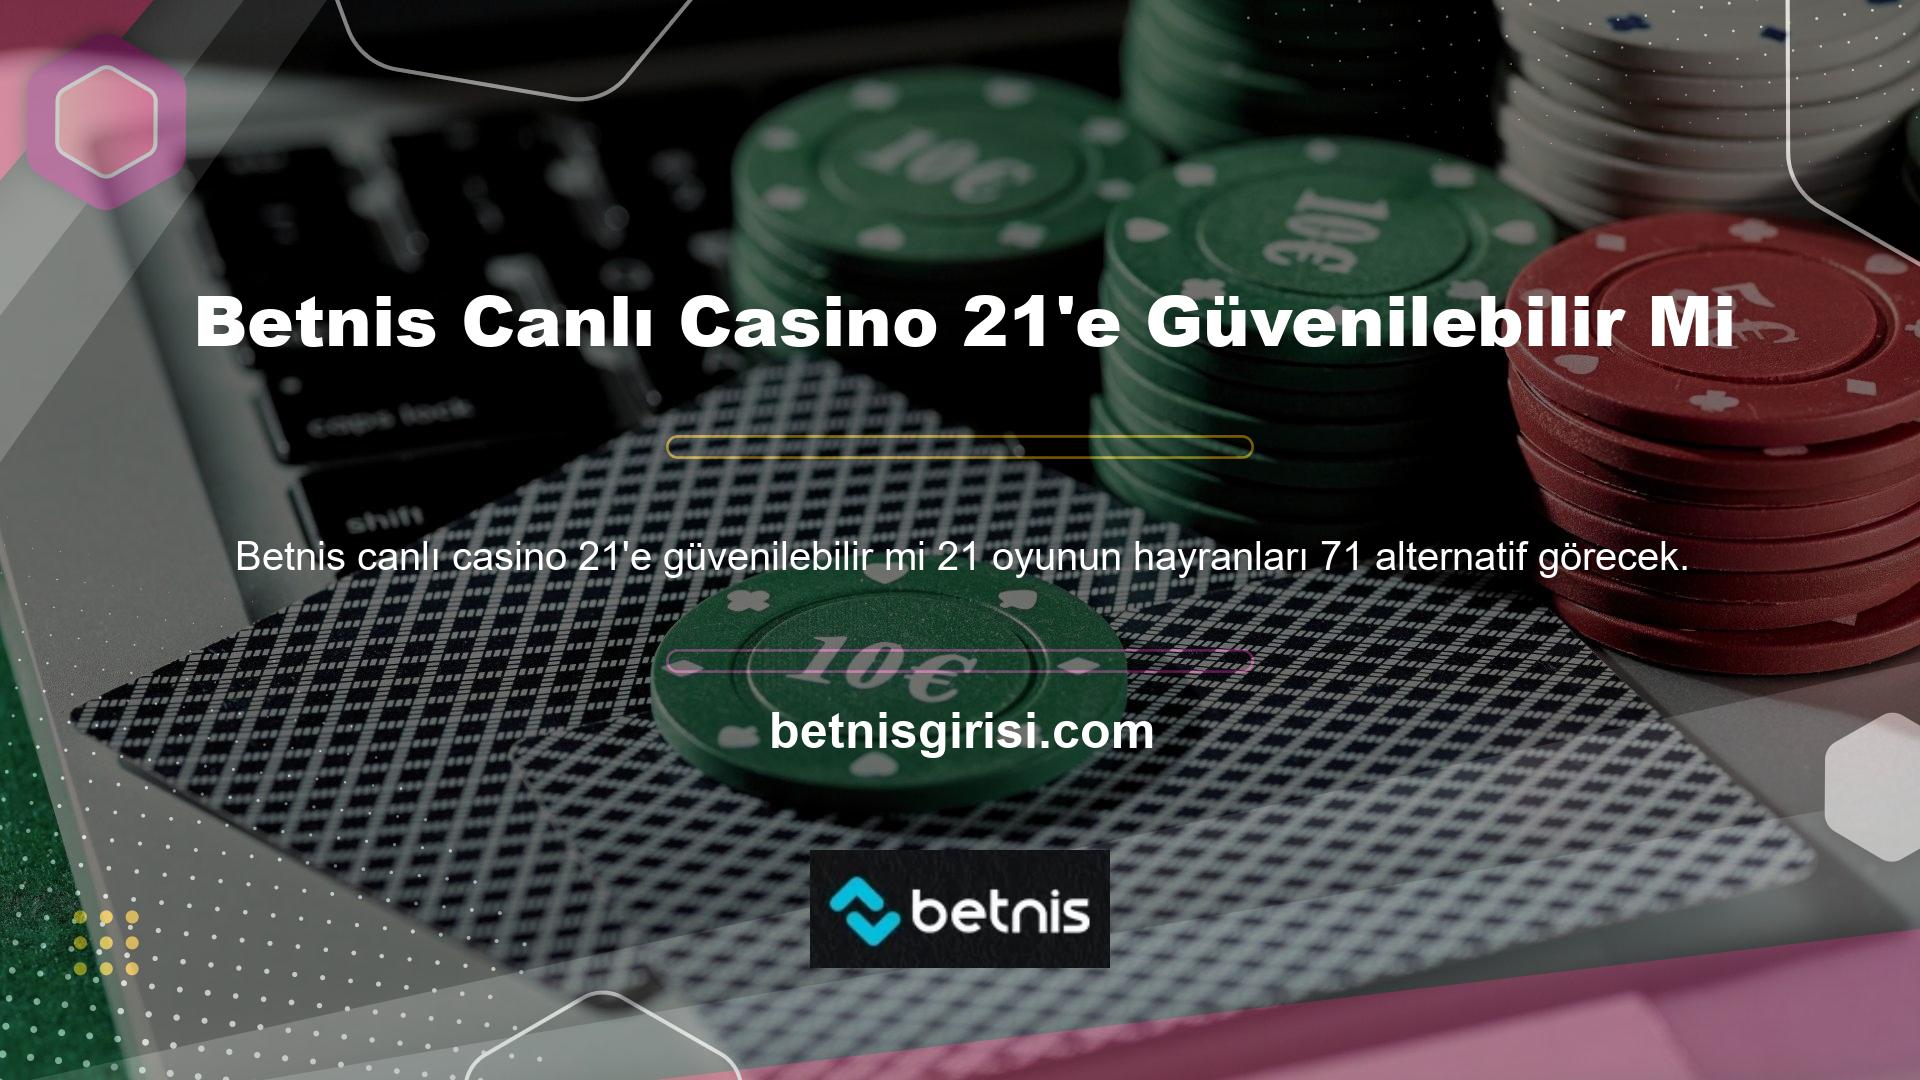 Site, Betnis Live Casino 21 oyununa 71 alternatife sahiptir, bu nedenle tüm seçeneklere gerçek bir krupiye eşlik eder